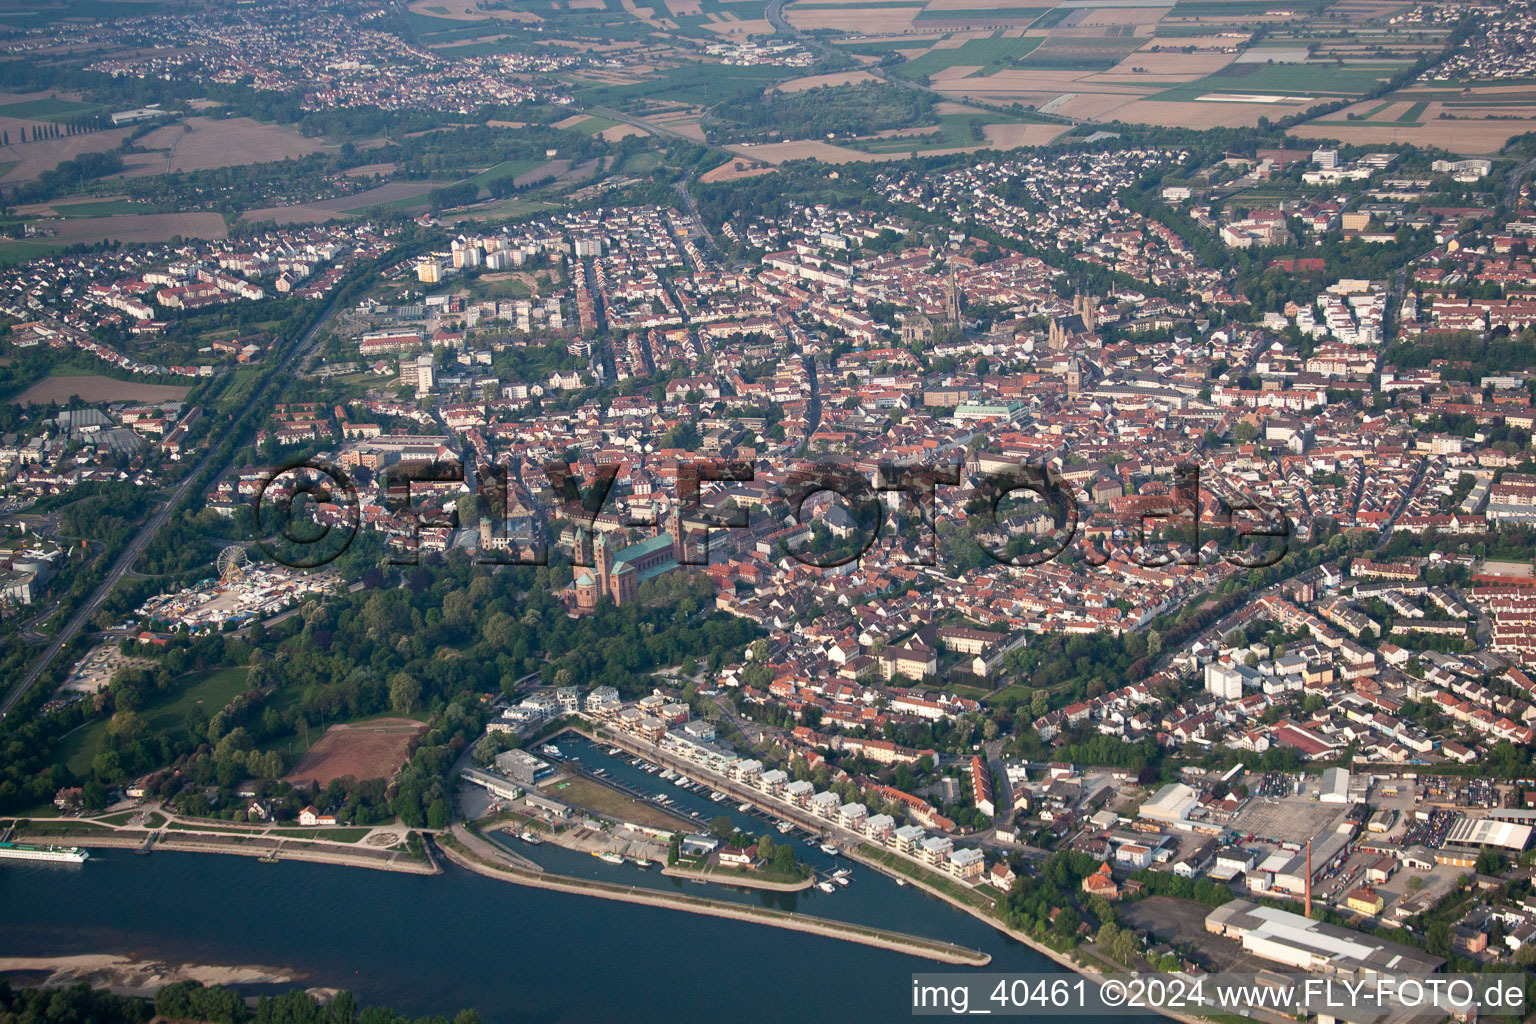 Luftbild von Ortschaft an den Fluss- Uferbereichen des Rhein in Speyer im Bundesland Rheinland-Pfalz, Deutschland